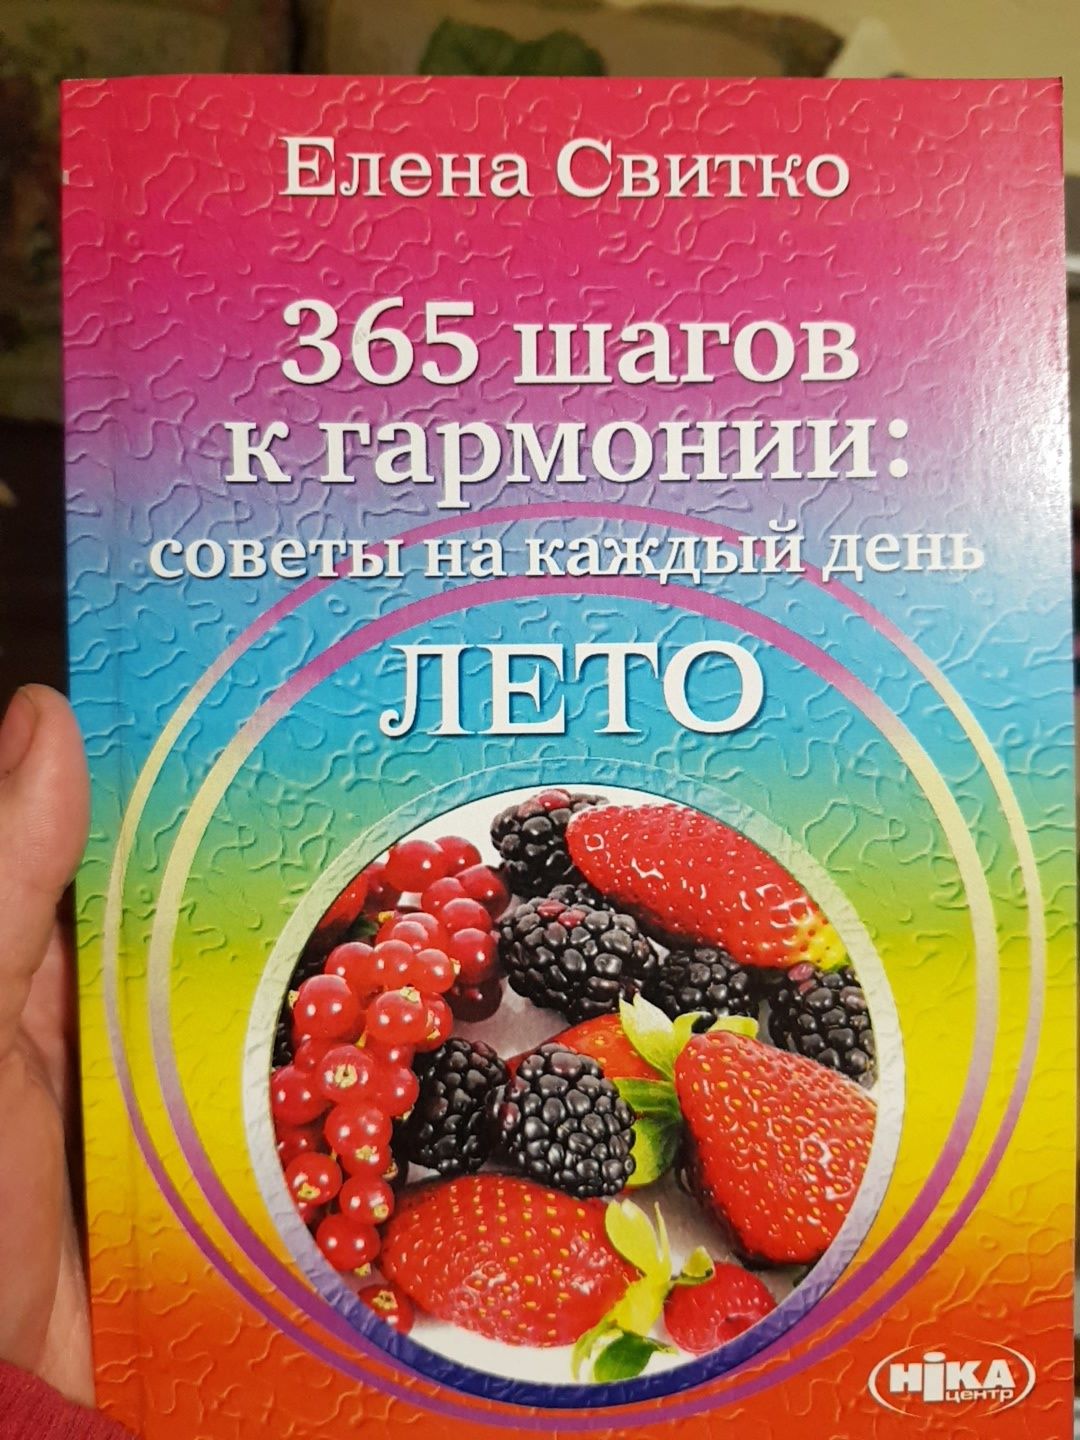 Книги Елены Свитко